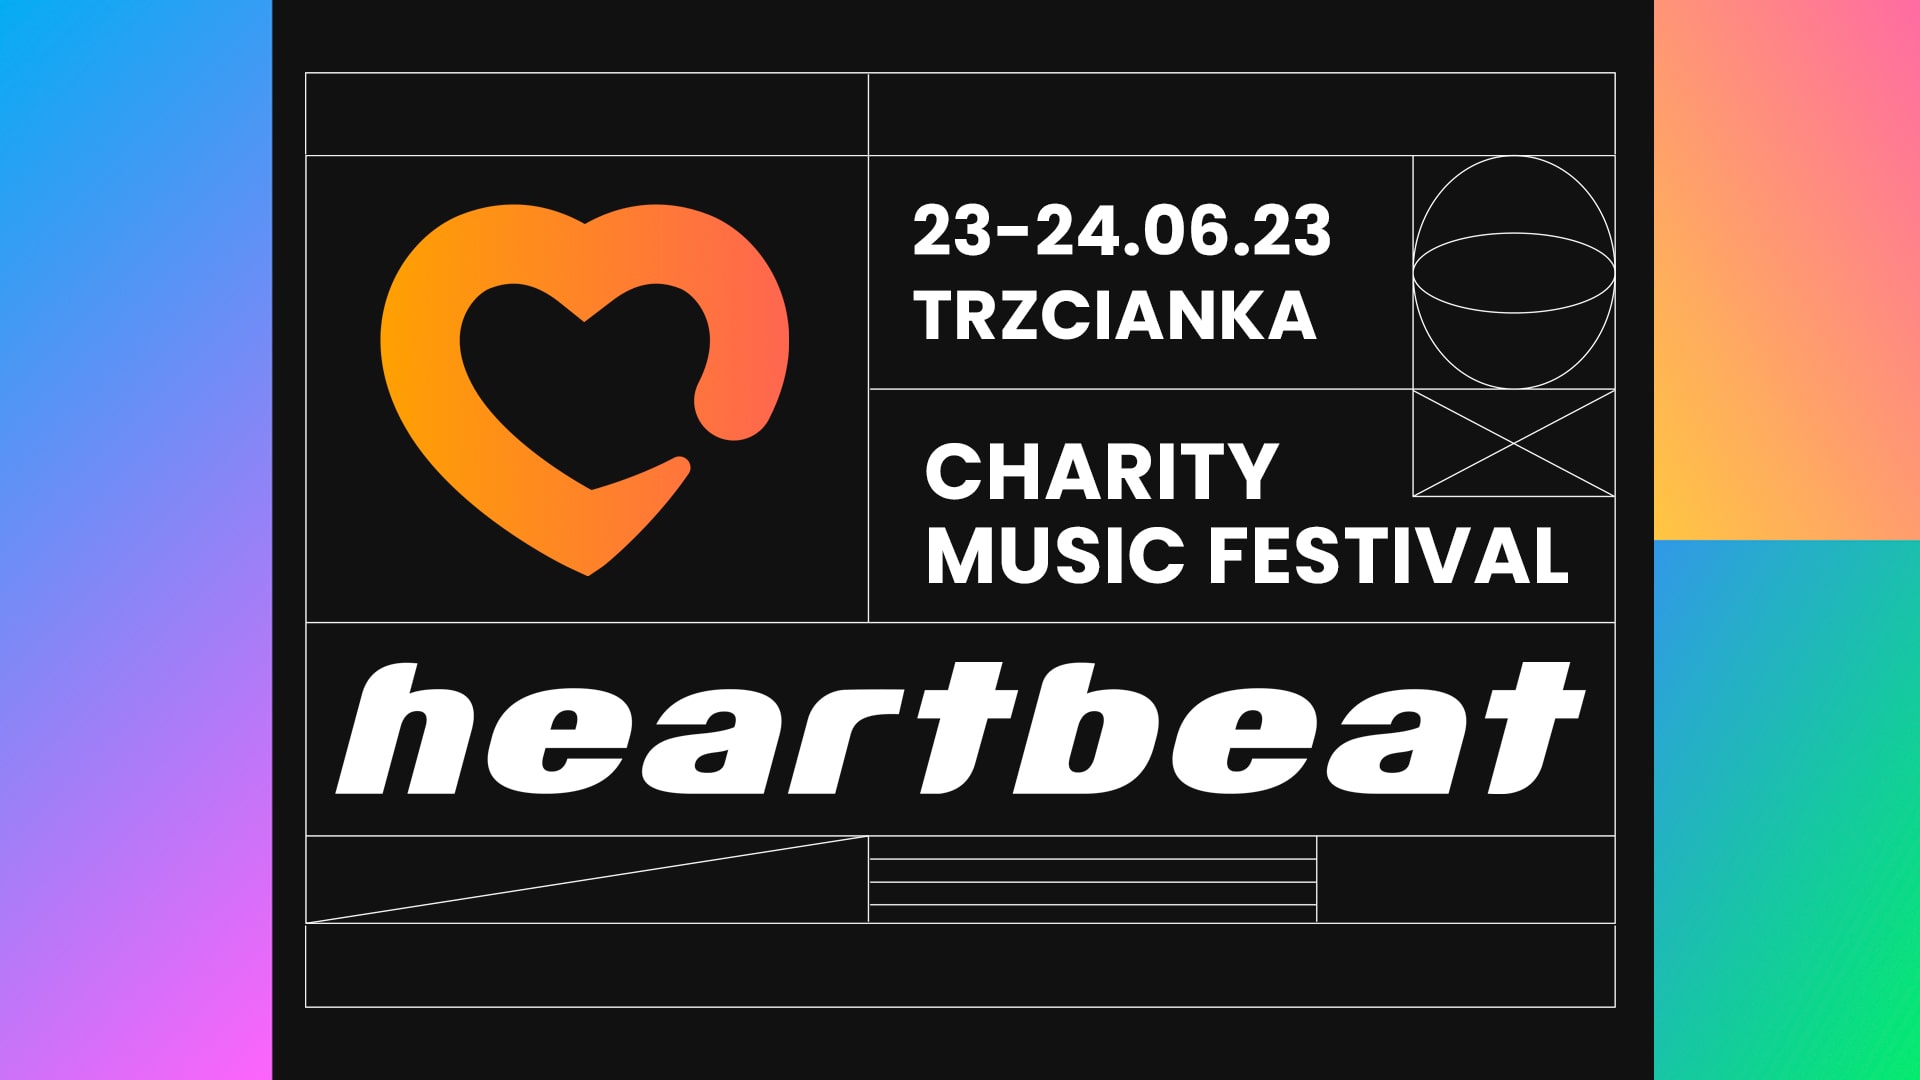 Heartbeat Festival 2023